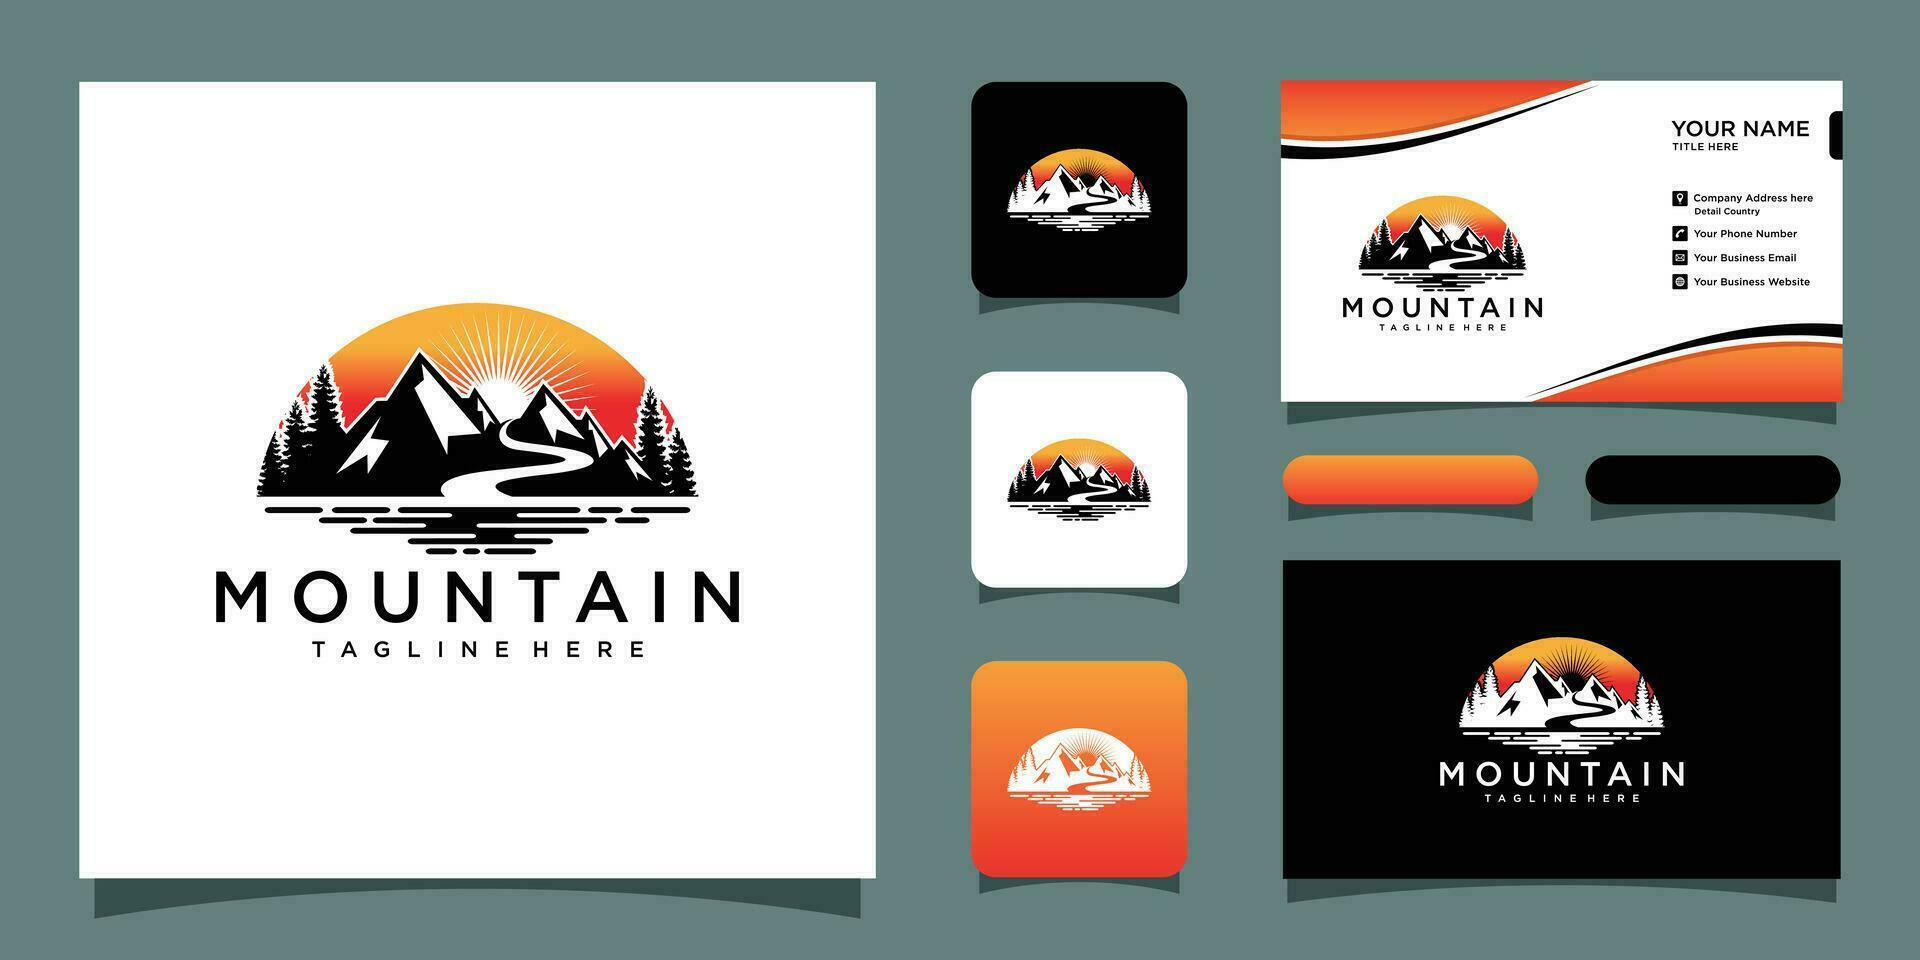 Creative Mountain Concept Logo Design Template with business card design Premium Vector